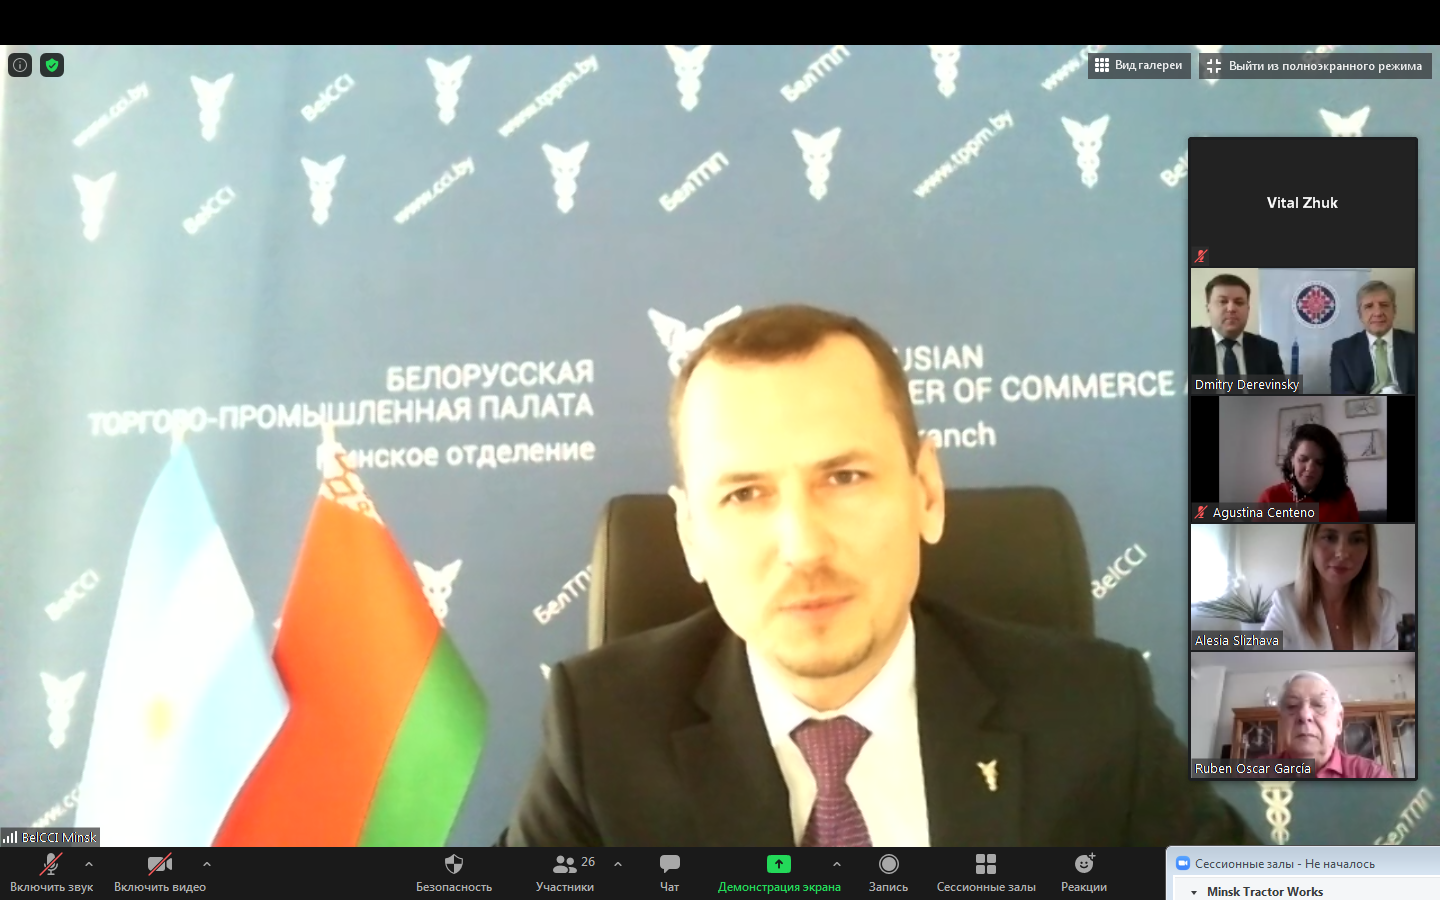 Онлайн-встреча "Беларусь и Аргентина: перспективные направления внешнеторгового сотрудничества"